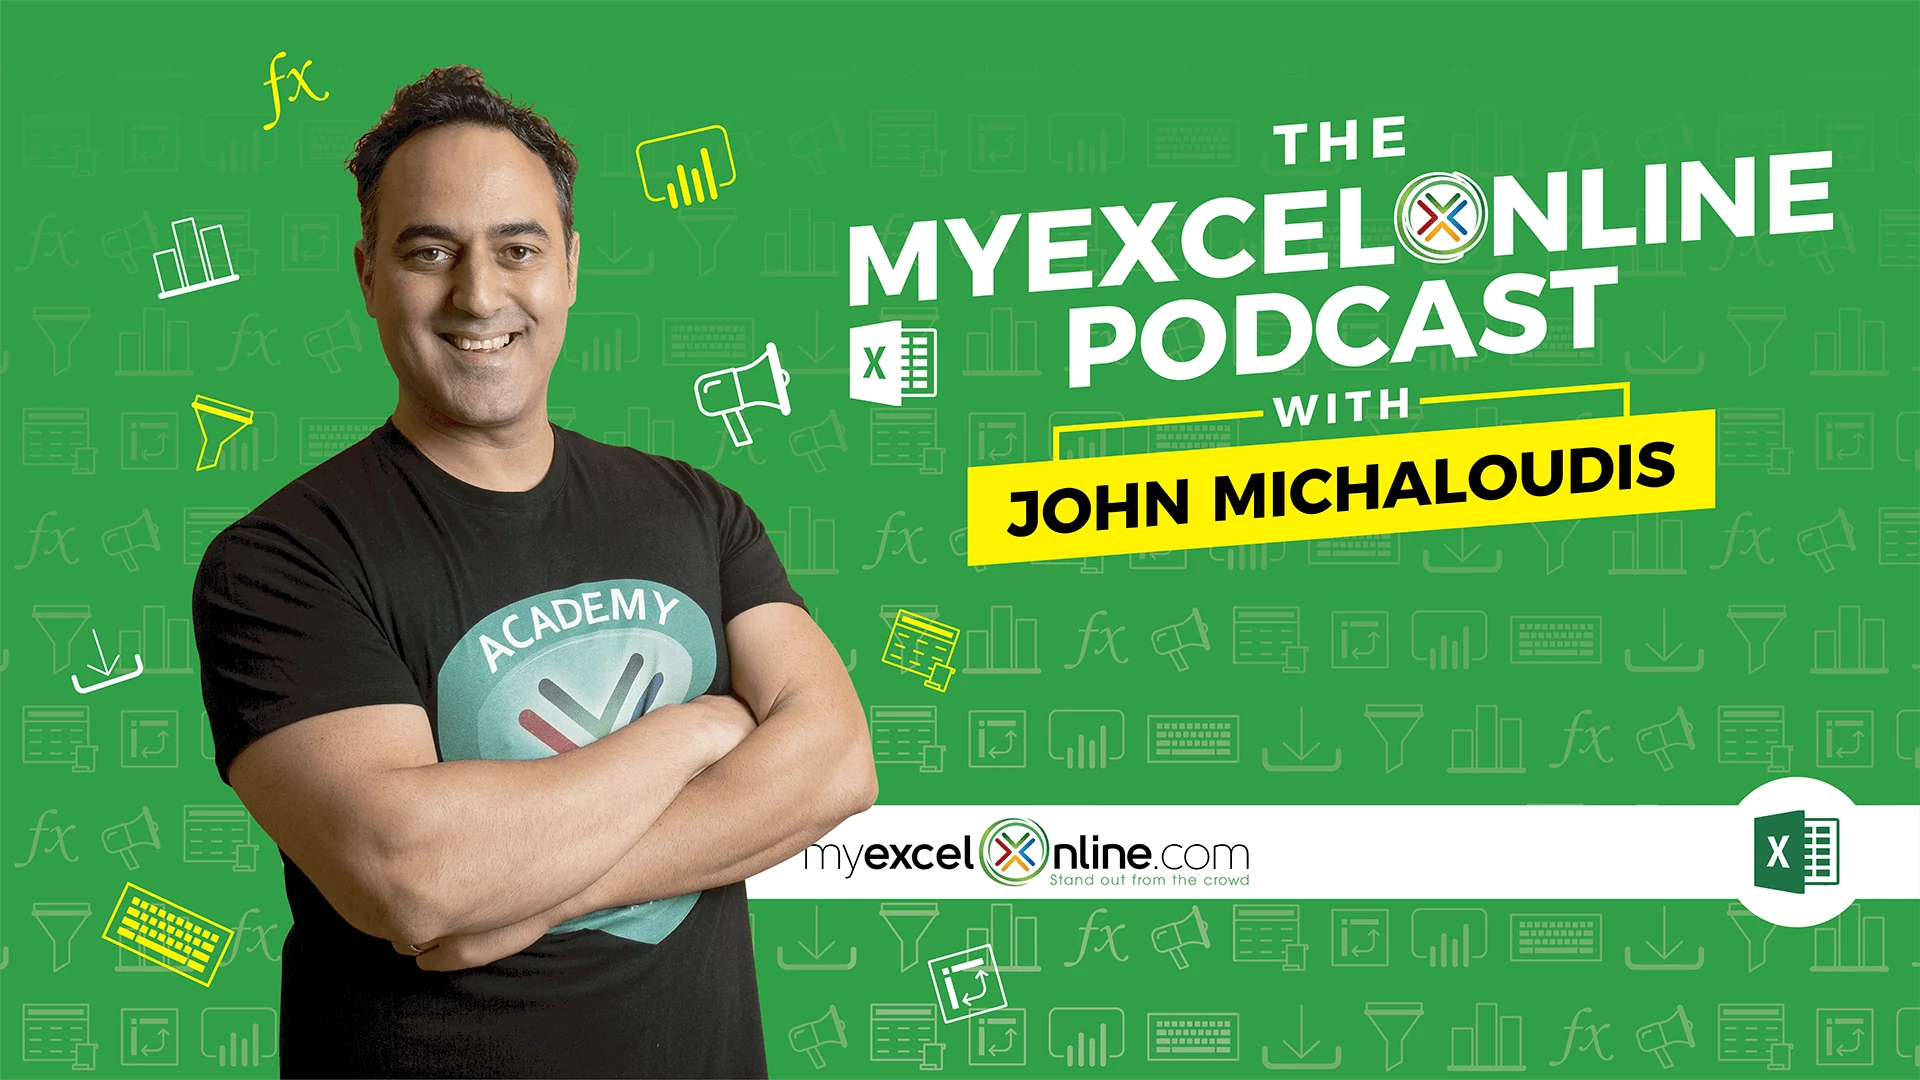 MyExcelOnline Podcasts